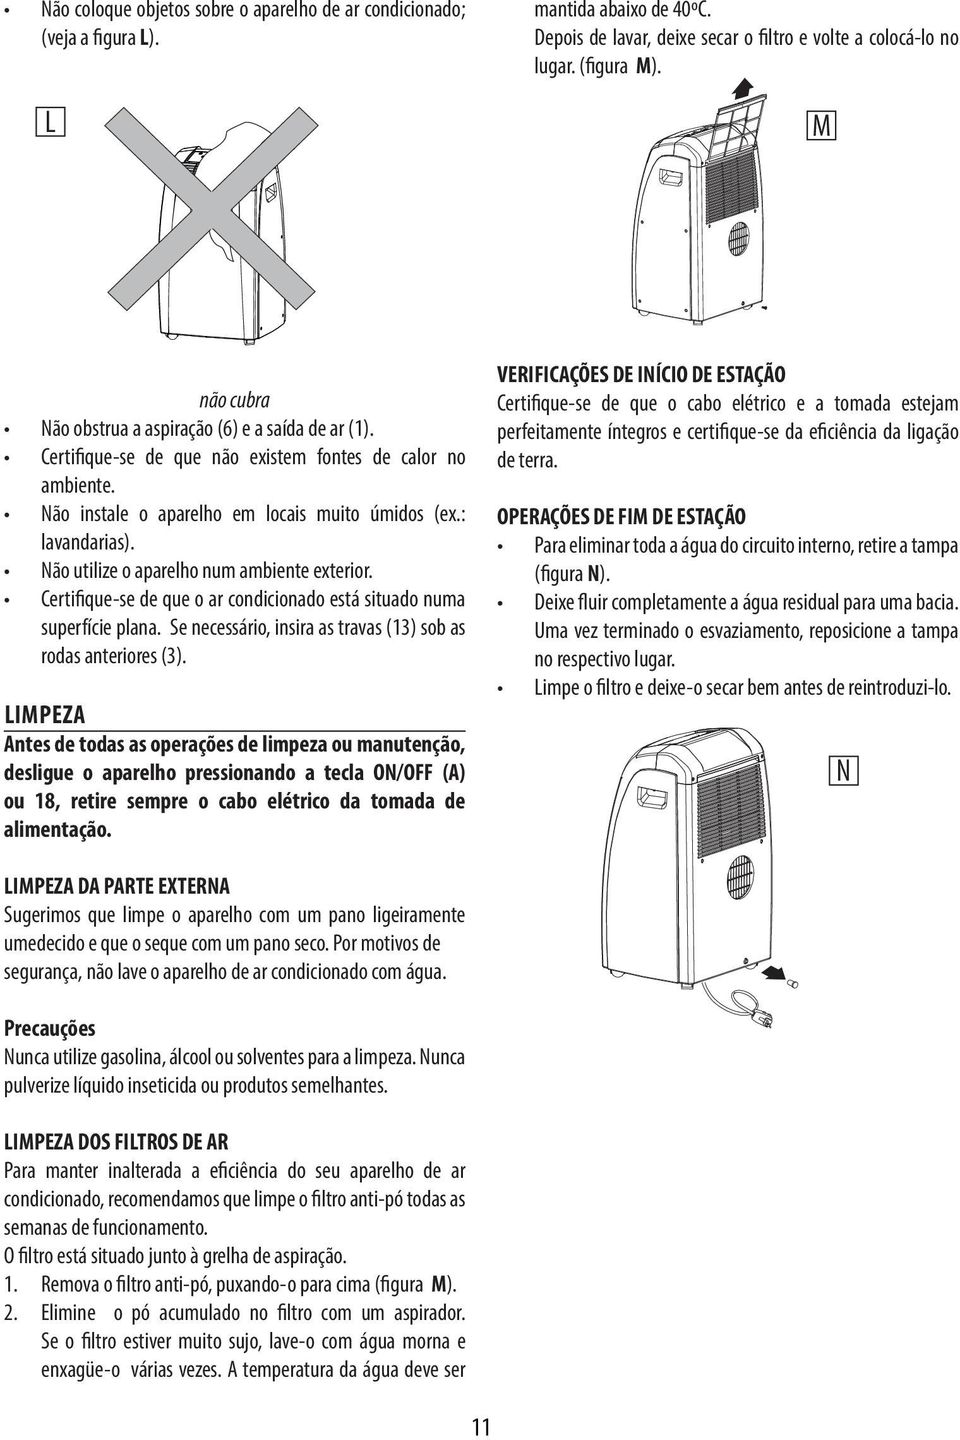 Não utilize o aparelho num ambiente exterior. Certifique-se de que o ar condicionado está situado numa superfície plana. Se necessário, insira as travas (13) sob as rodas anteriores (3).